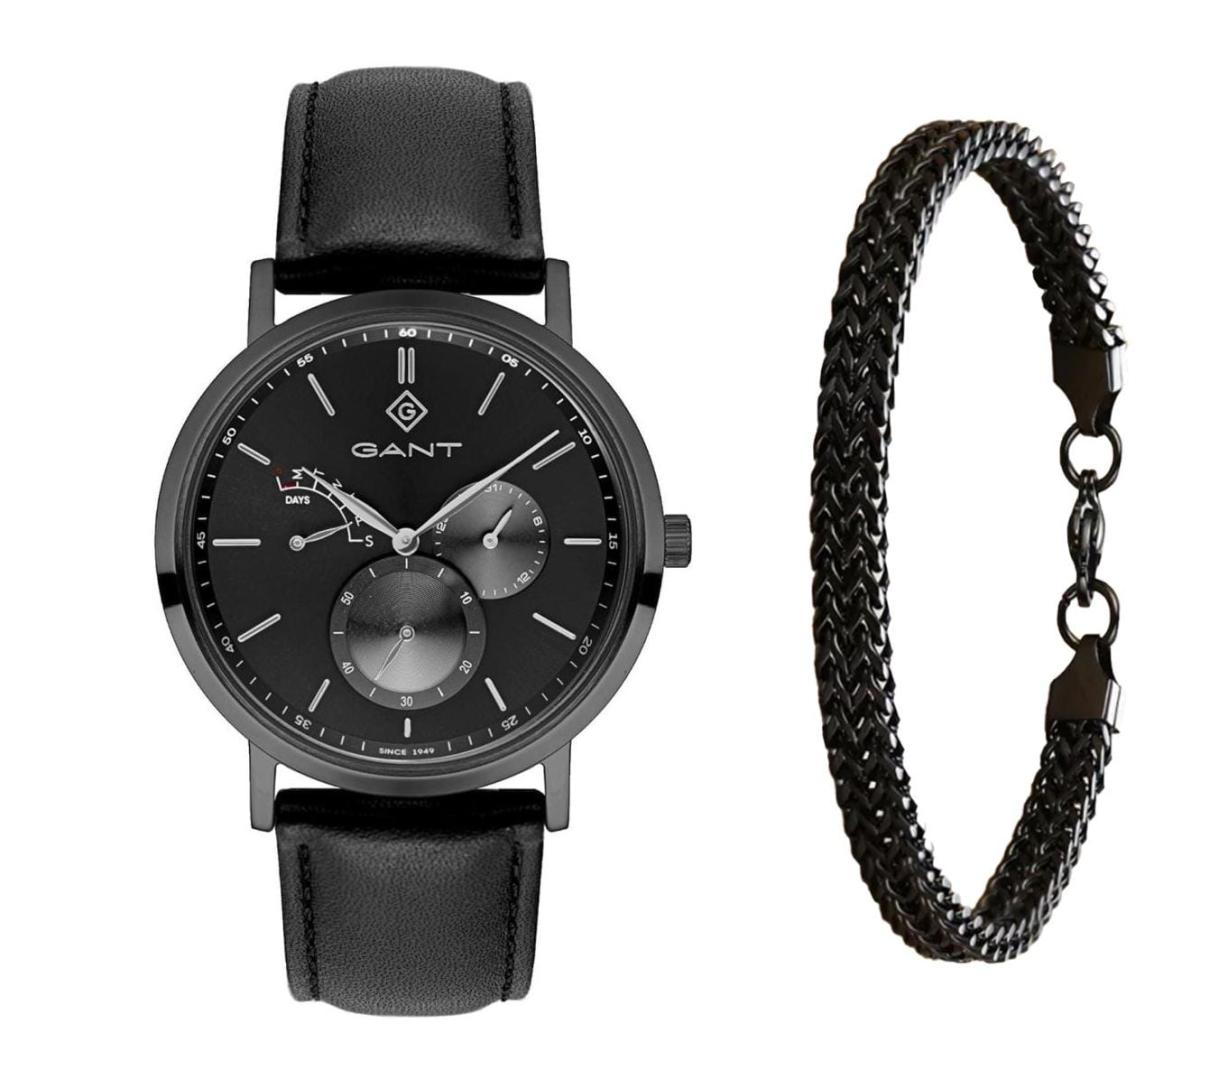 שעון יד אנלוגי לגבר gant g131004 גאנט עם צמיד חוליות שחור